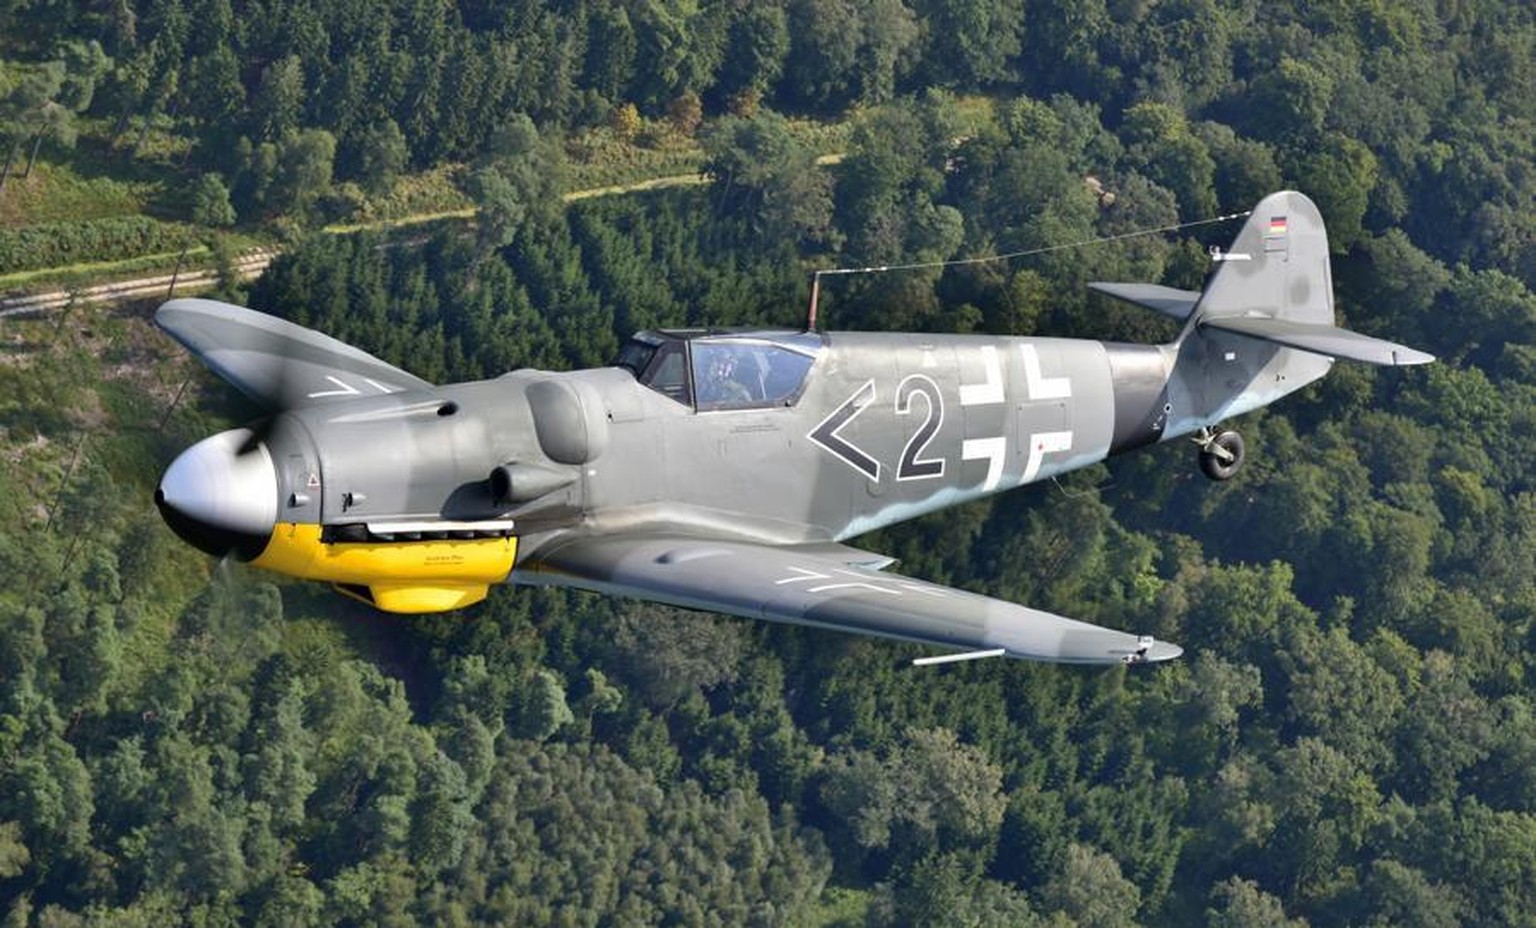 Messerschmitt Bf-109 G-14
S/N 462 707 | Reg. D-FMGV 
flugzeug zweiter weltkrieg nazideutschland luftwaffe https://www.boschungglobal.com/Inventory/Warbirds/Messerschmitt/Bf-109-G-14/D-FMGV